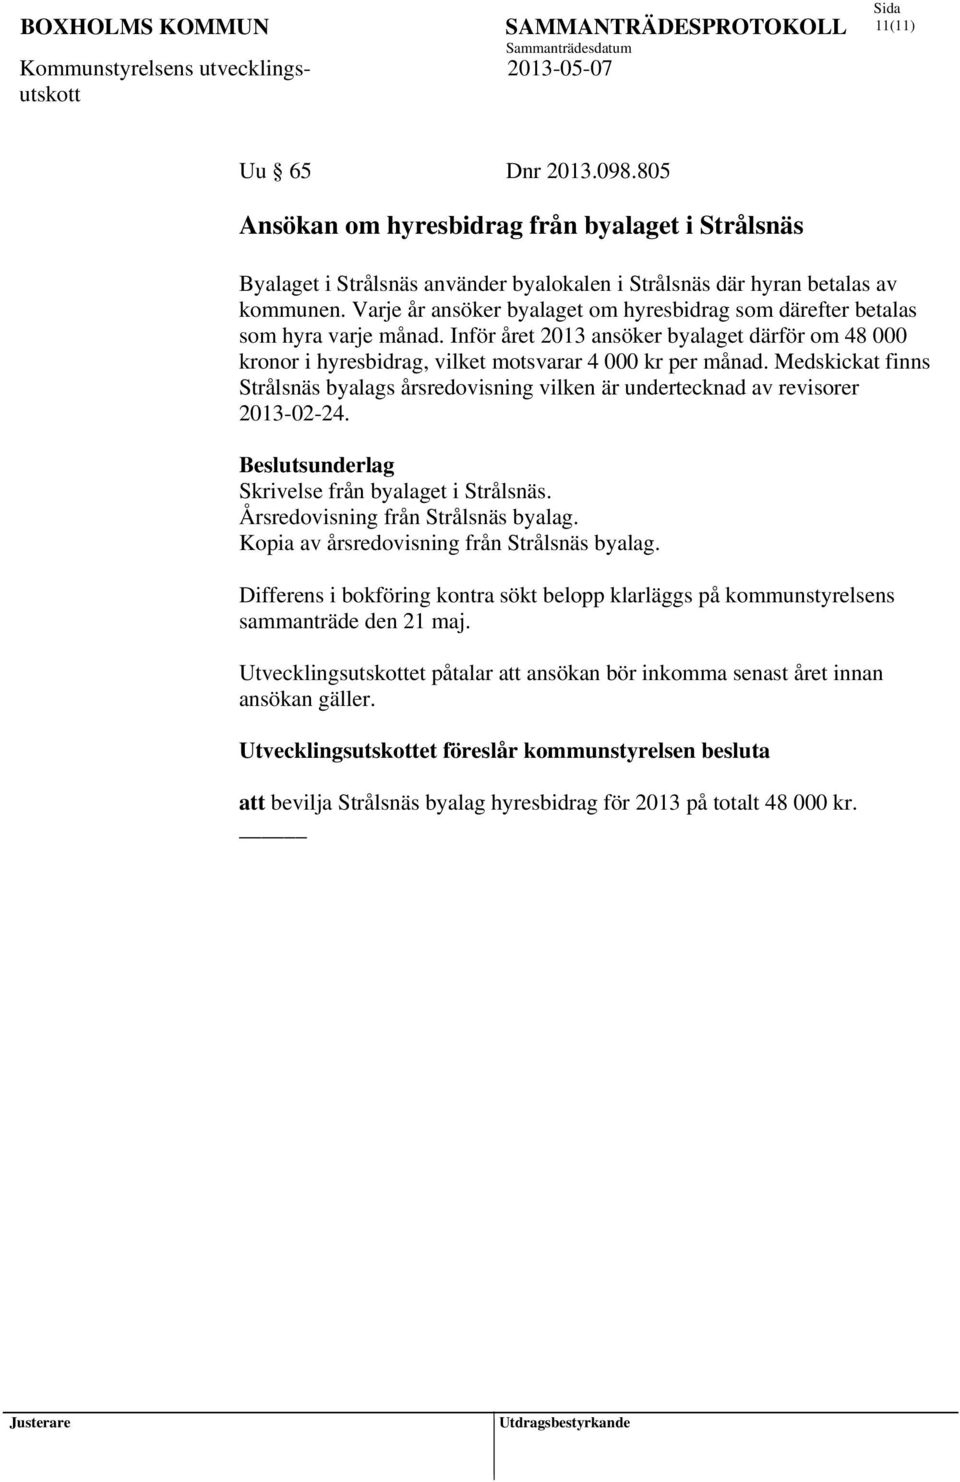 Medskickat finns Strålsnäs byalags årsredovisning vilken är undertecknad av revisorer 2013-02-24. Beslutsunderlag Skrivelse från byalaget i Strålsnäs. Årsredovisning från Strålsnäs byalag.